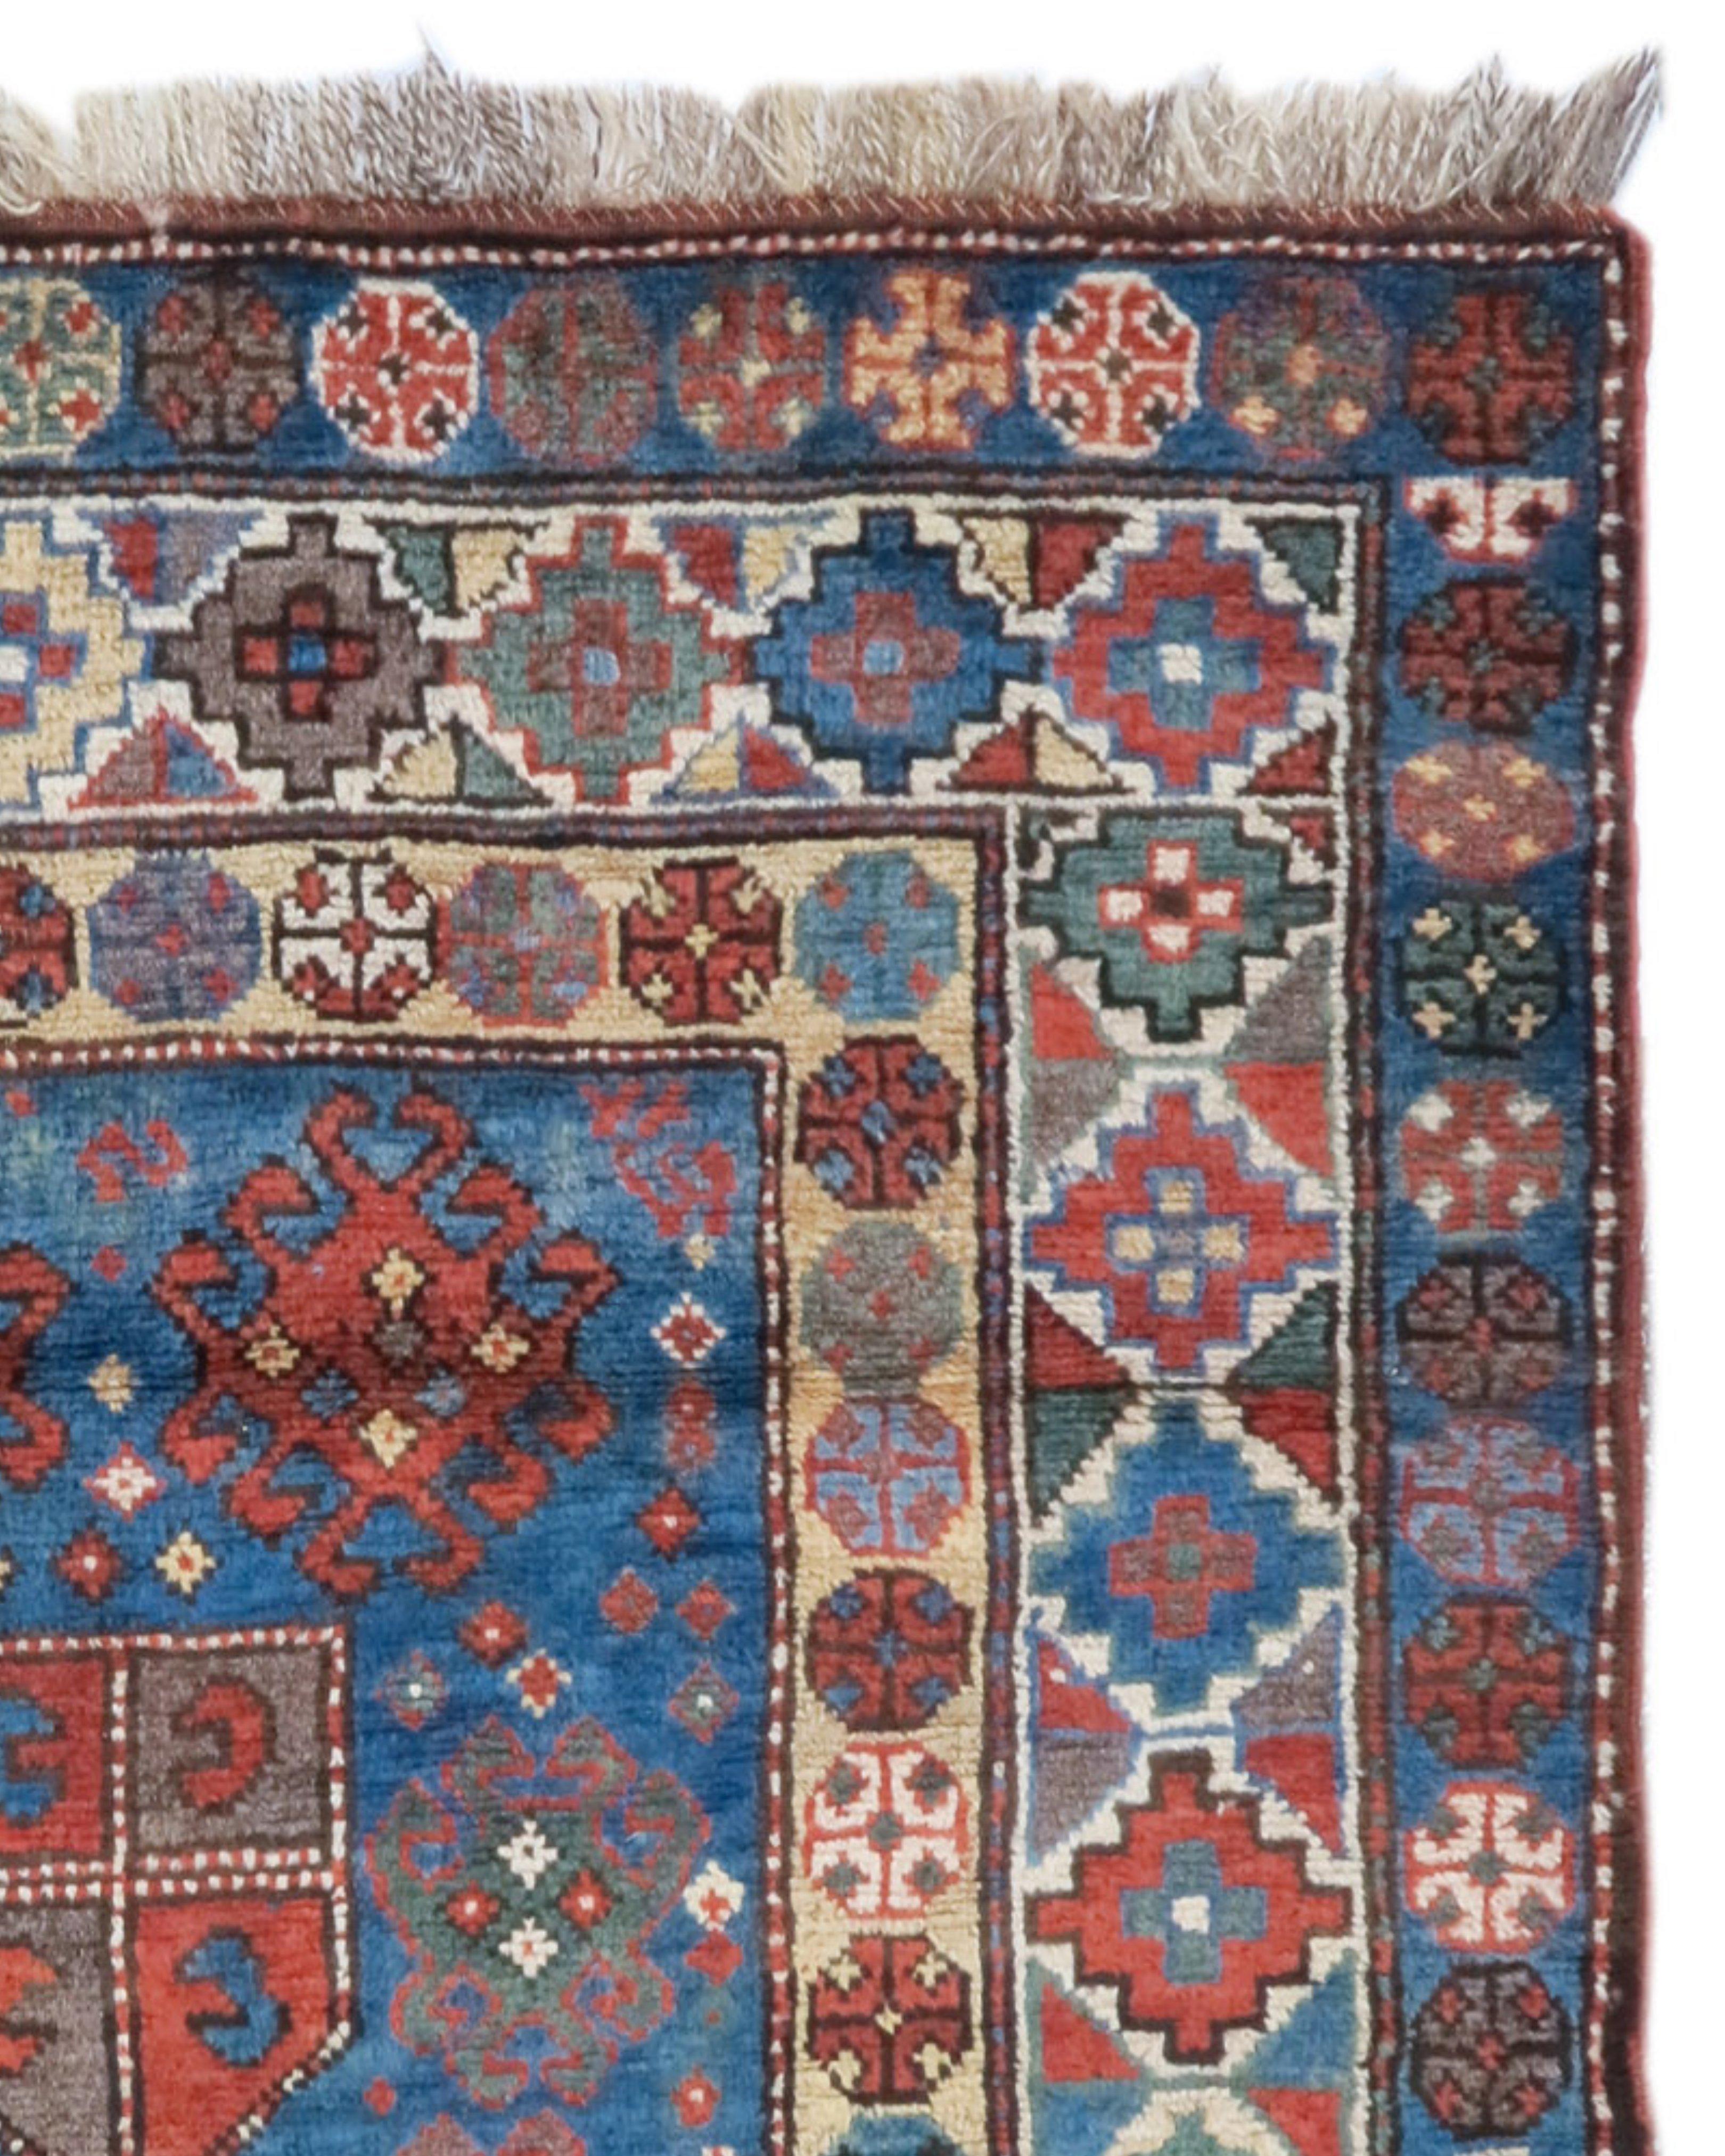 Antiker Kazak-Teppich, um 1900

Zusätzliche Informationen:
Abmessungen: 3'5